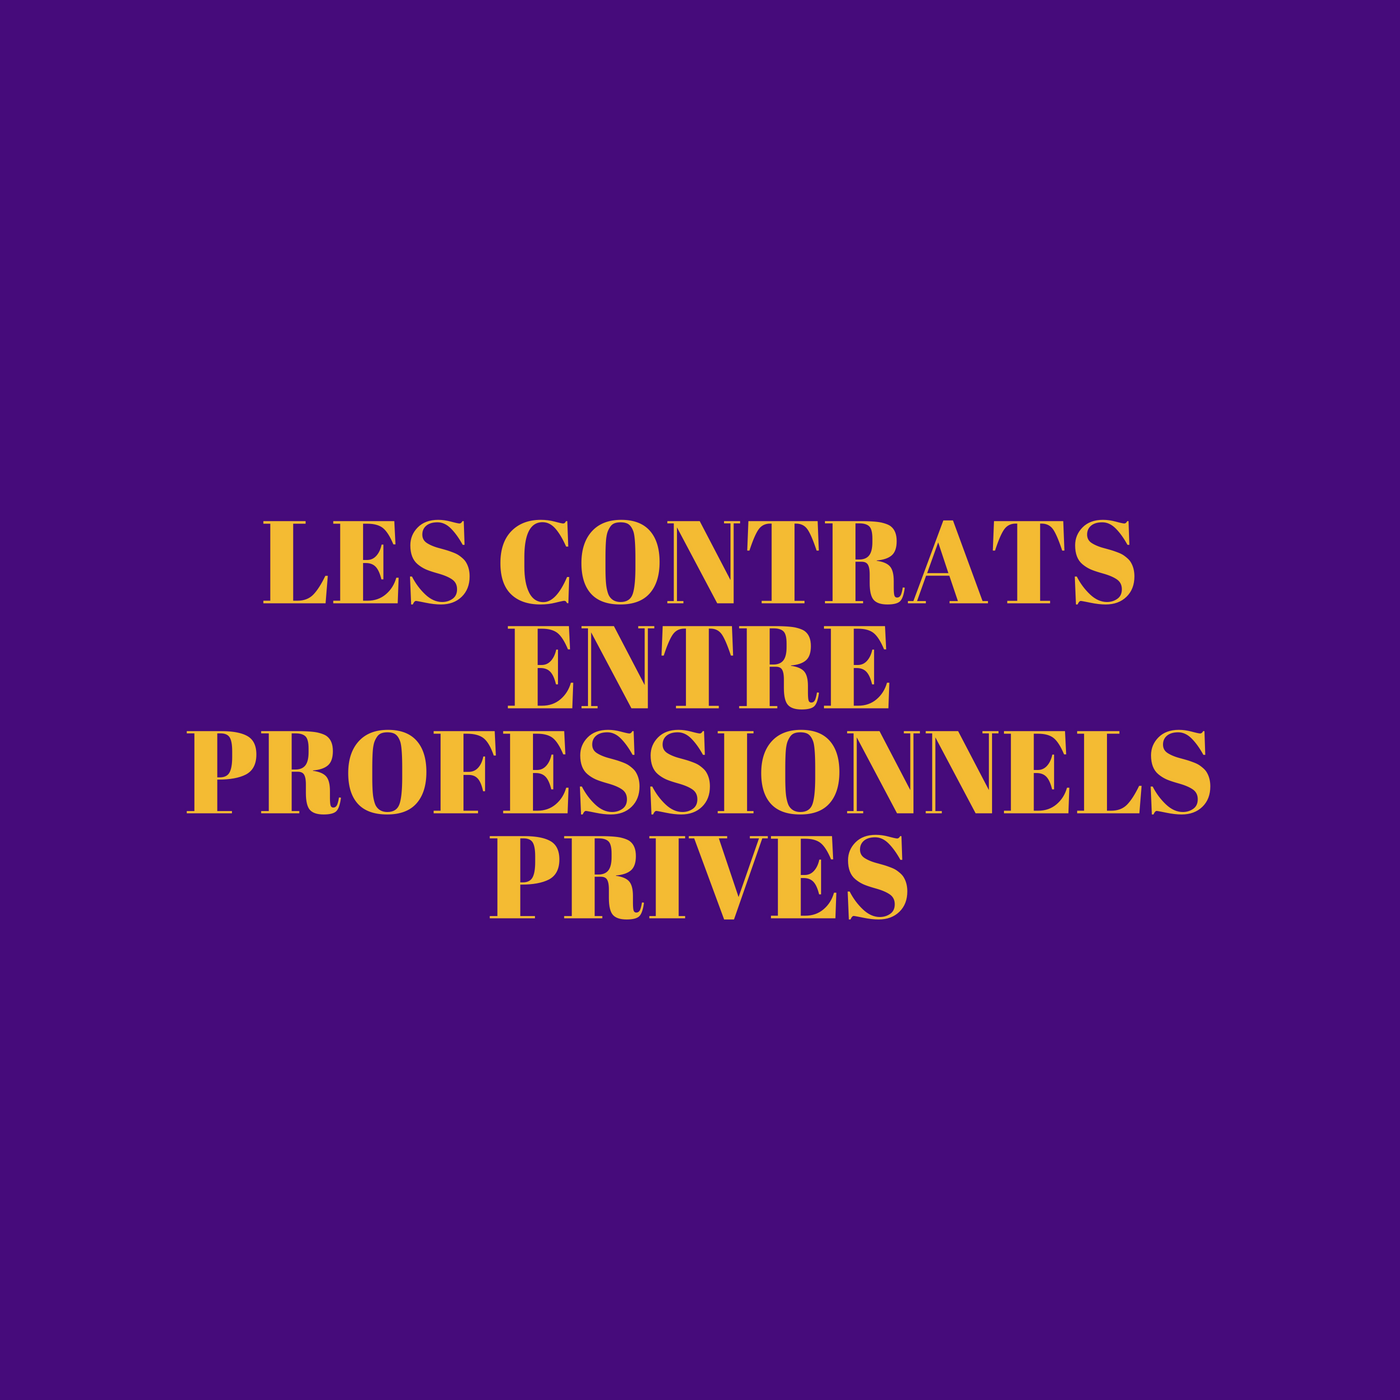 Les contrats entre professionnels privés